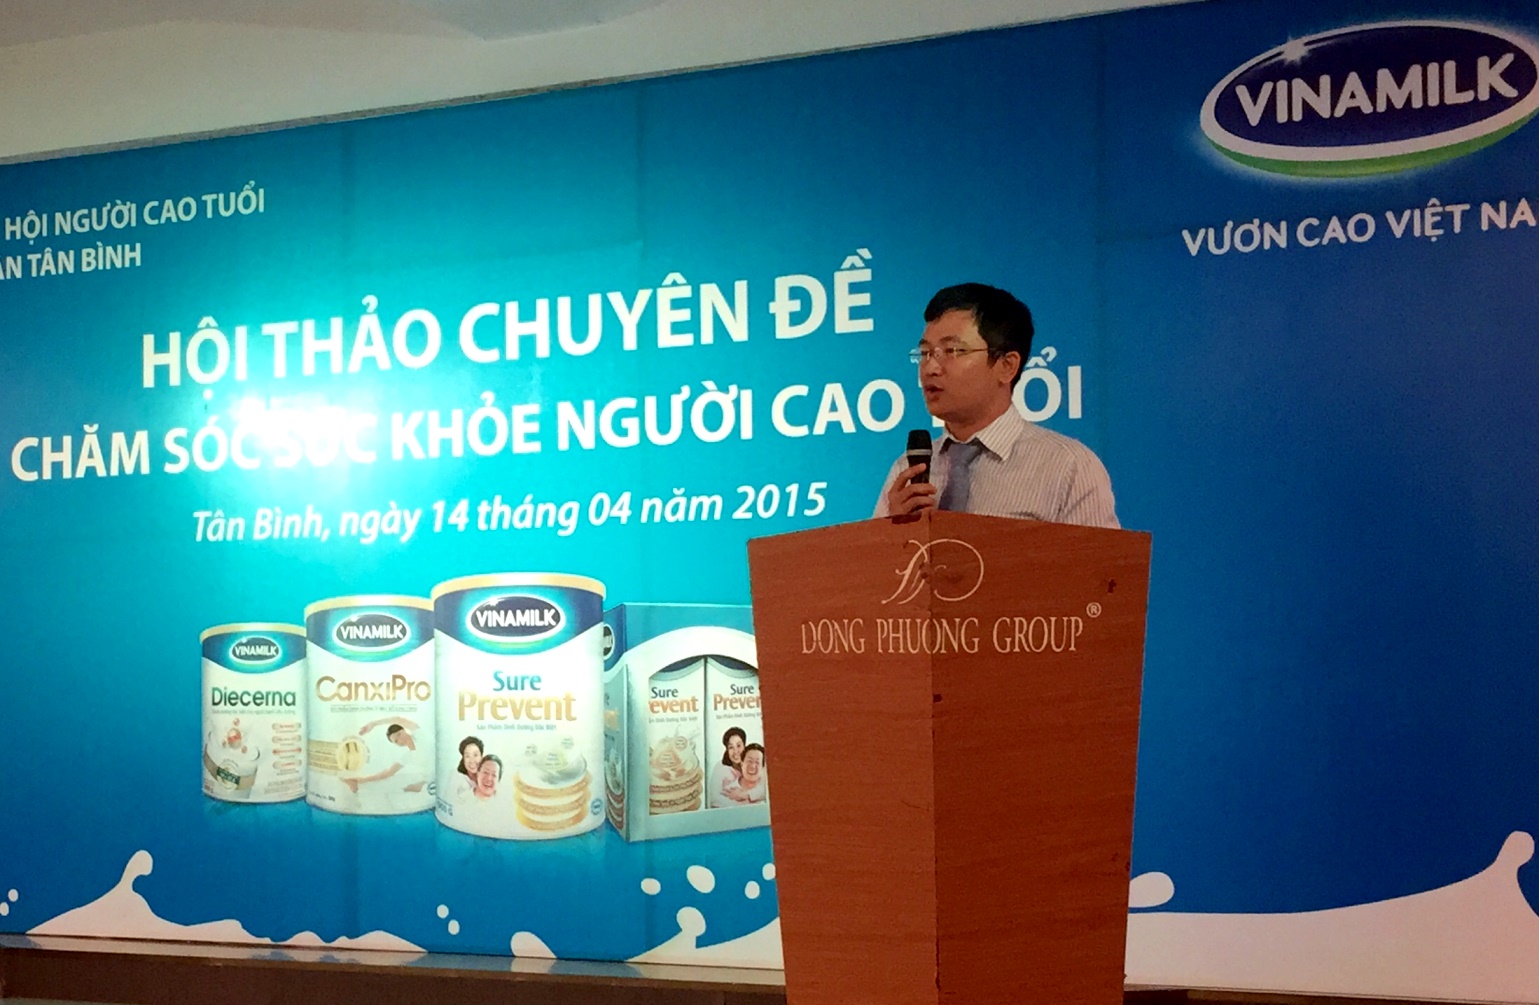 Ông Mai Thanh Việt – Giám Đốc Marketing ngành hàng sữa bột, Vinamilk chia sẻ với người tiêu dùng những thông tin về công ty